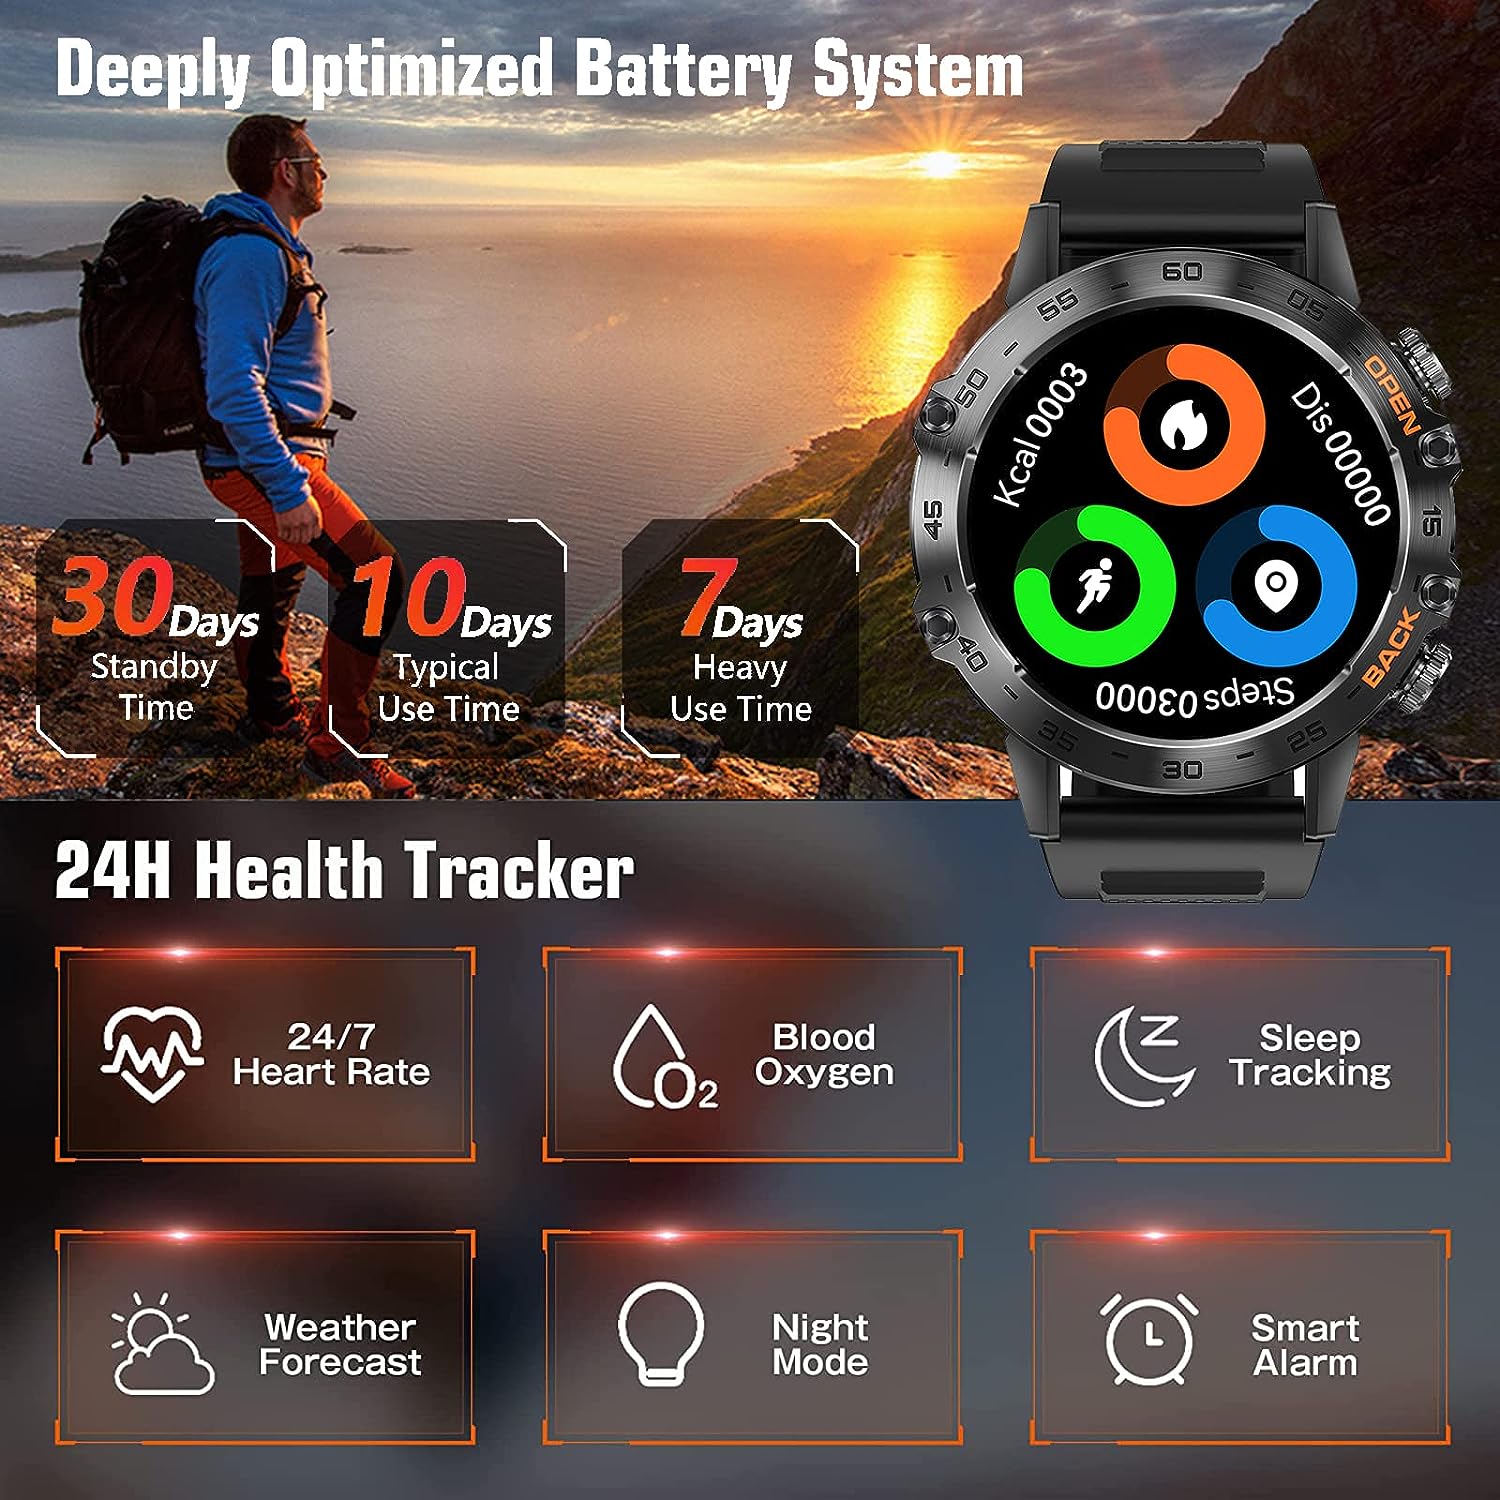 SoPrii Reloj Inteligente Hombre,Smartwatch Hombre Militar,1.39" Pantalla Táctil Completo, 100+ Modos de Deportes/SpO2/Pulsómetro/Monitor de Sueño, Outdoor Fitness Smartwatch iOS Android(Azul)